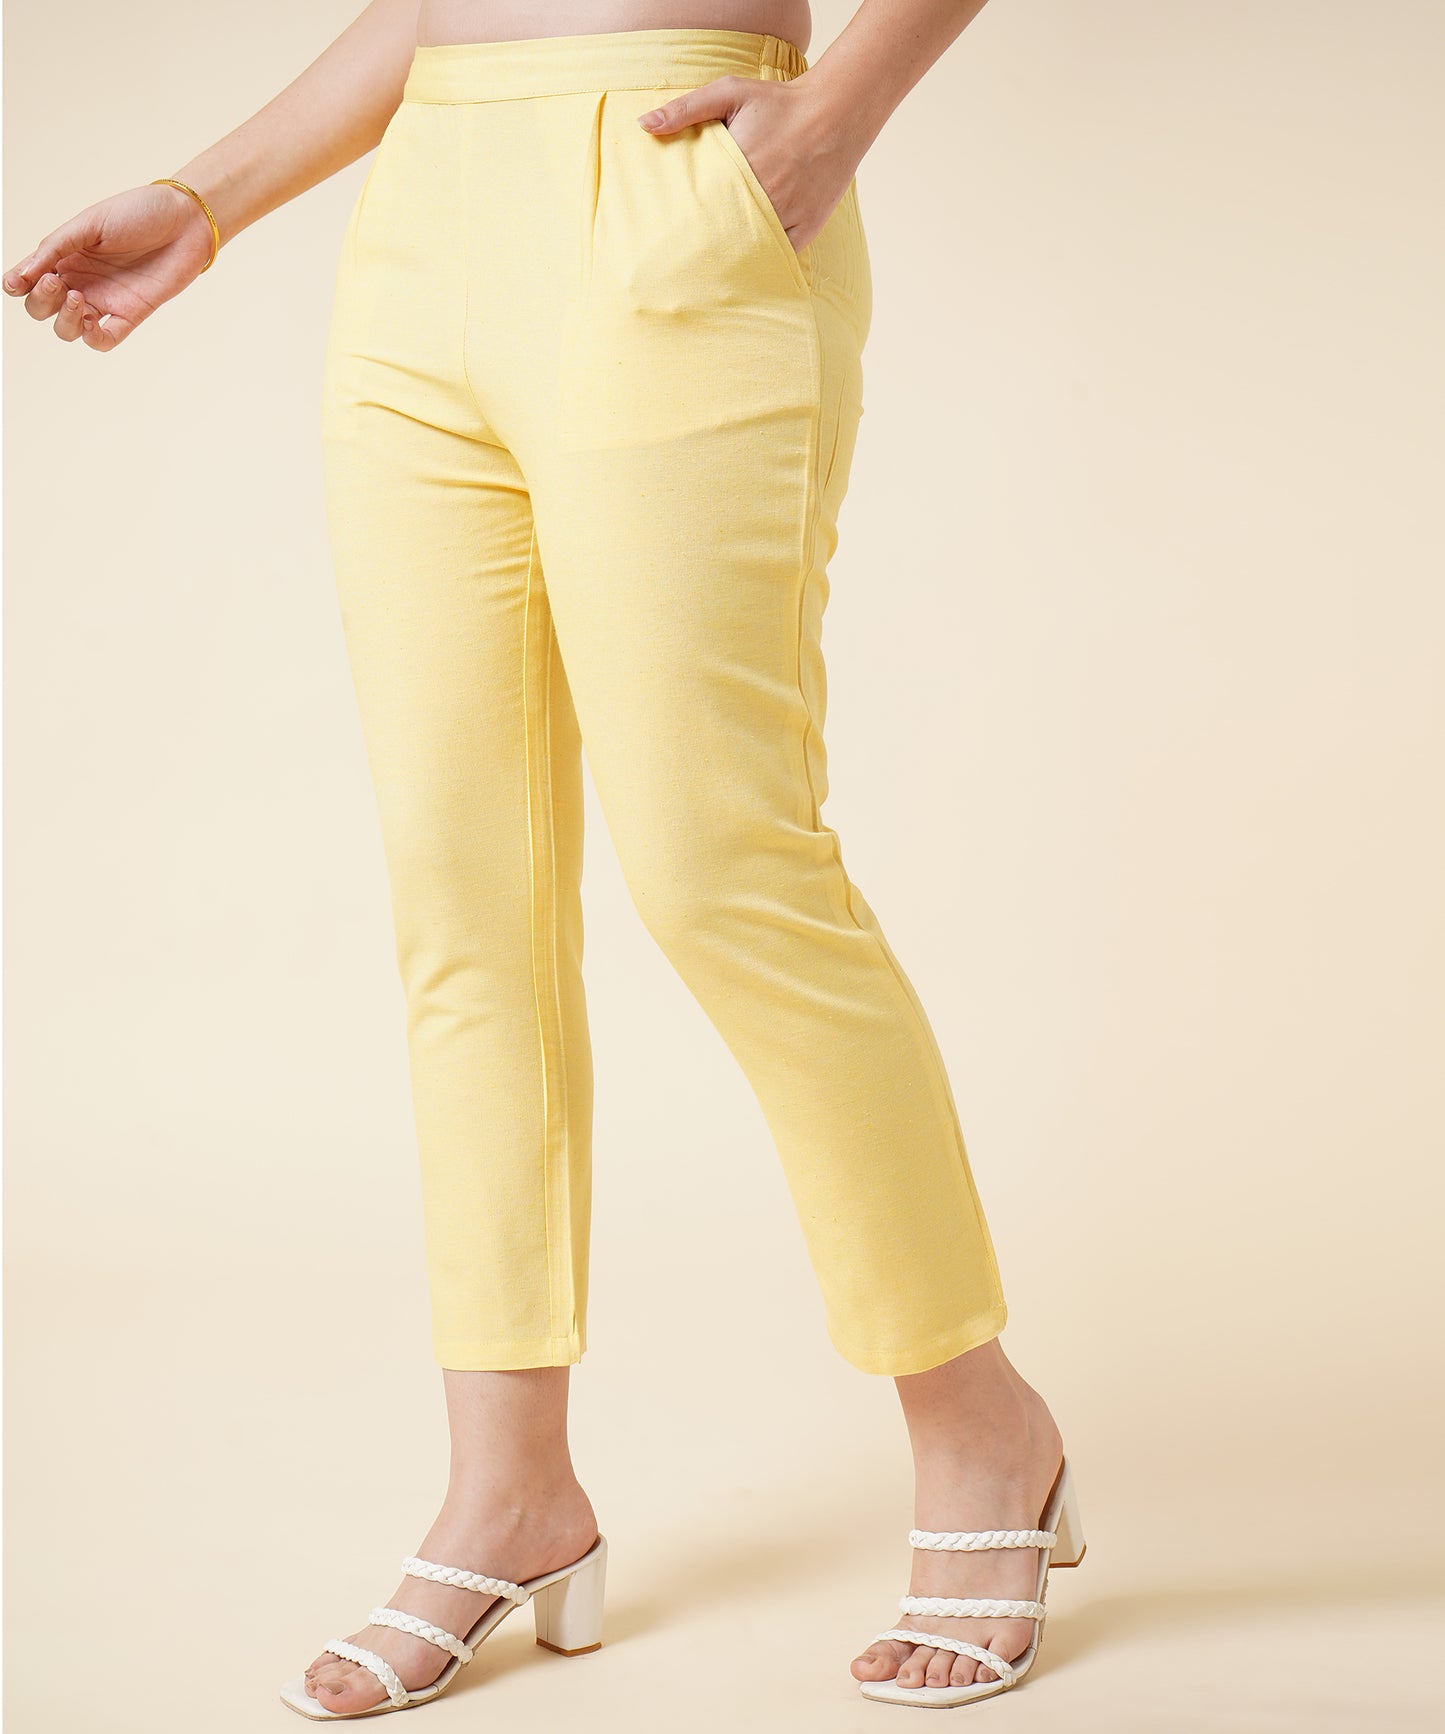 Cotton Kurta Set With Pants Check Design Pattern, Yellow